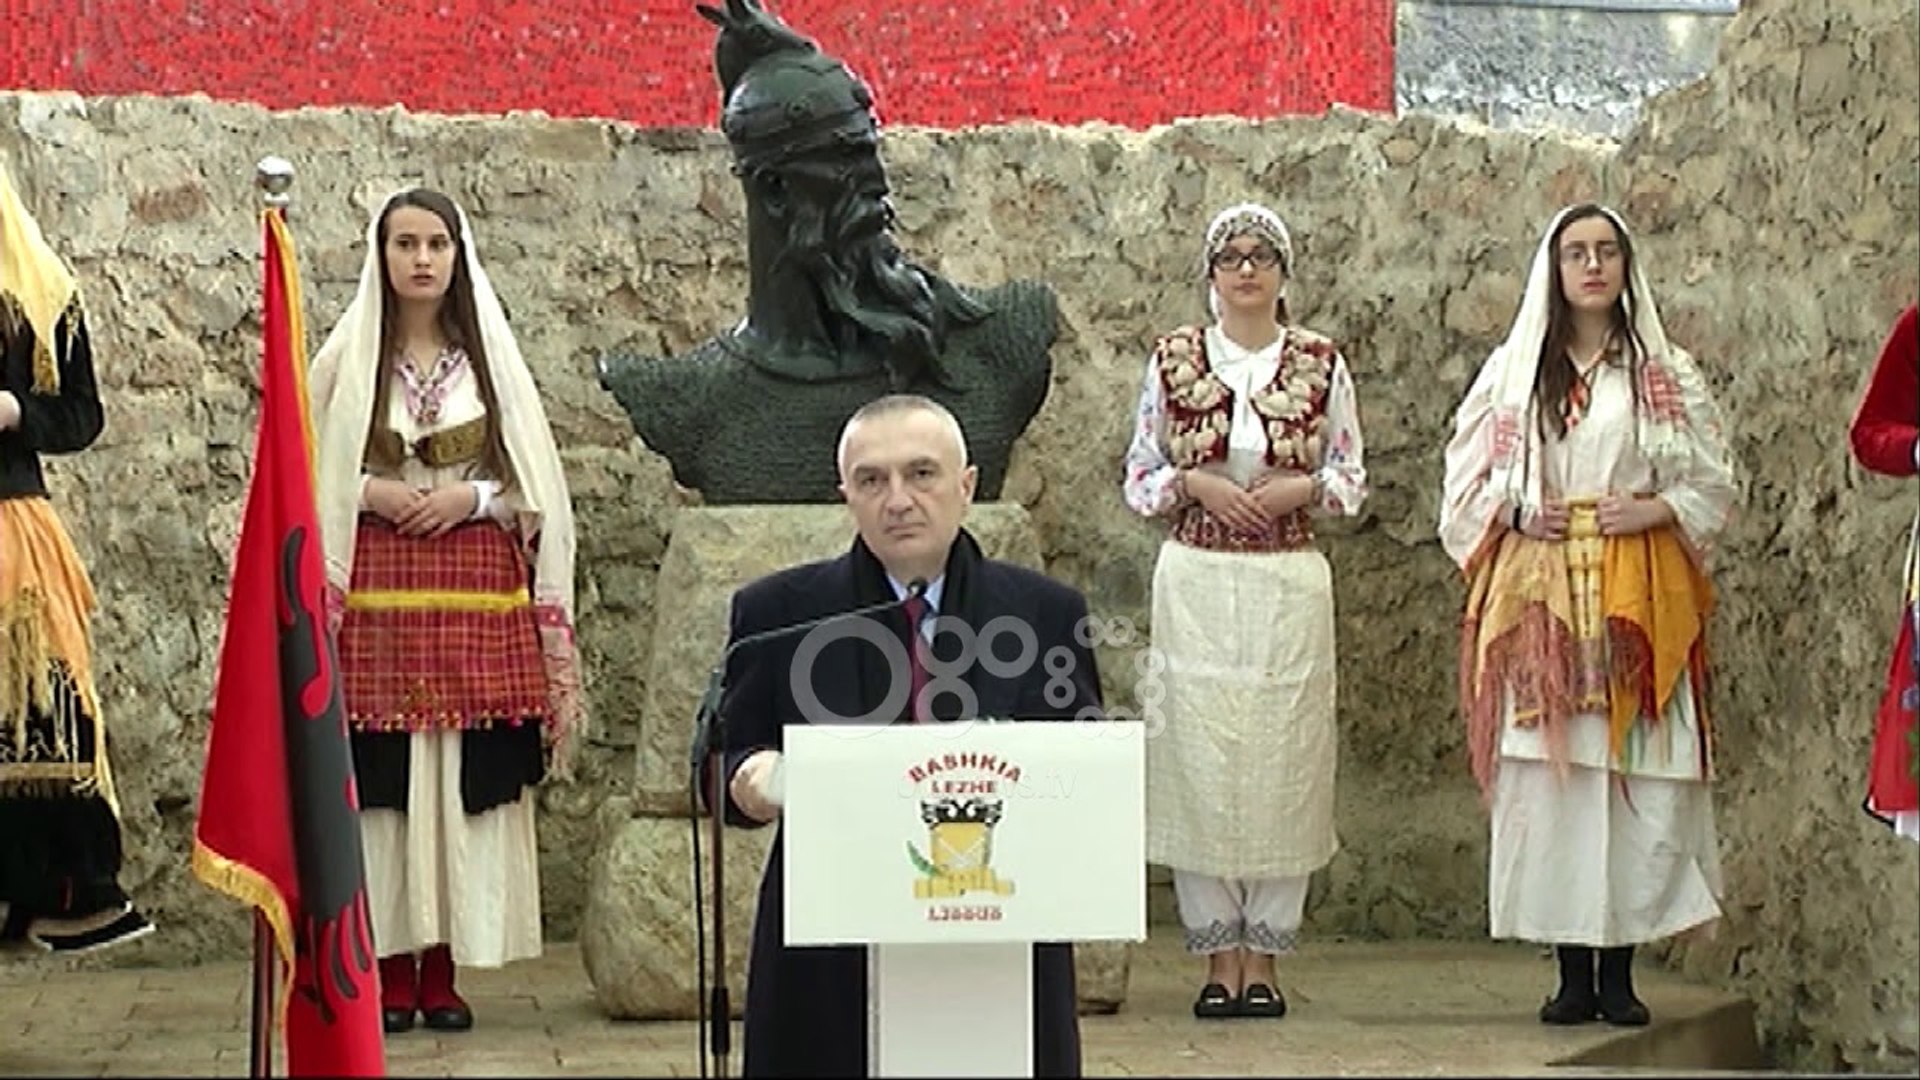 ⁣Ora News - Meta përsërit amanetin e Skënderbeut: Të bashkohemi në interes të kombit